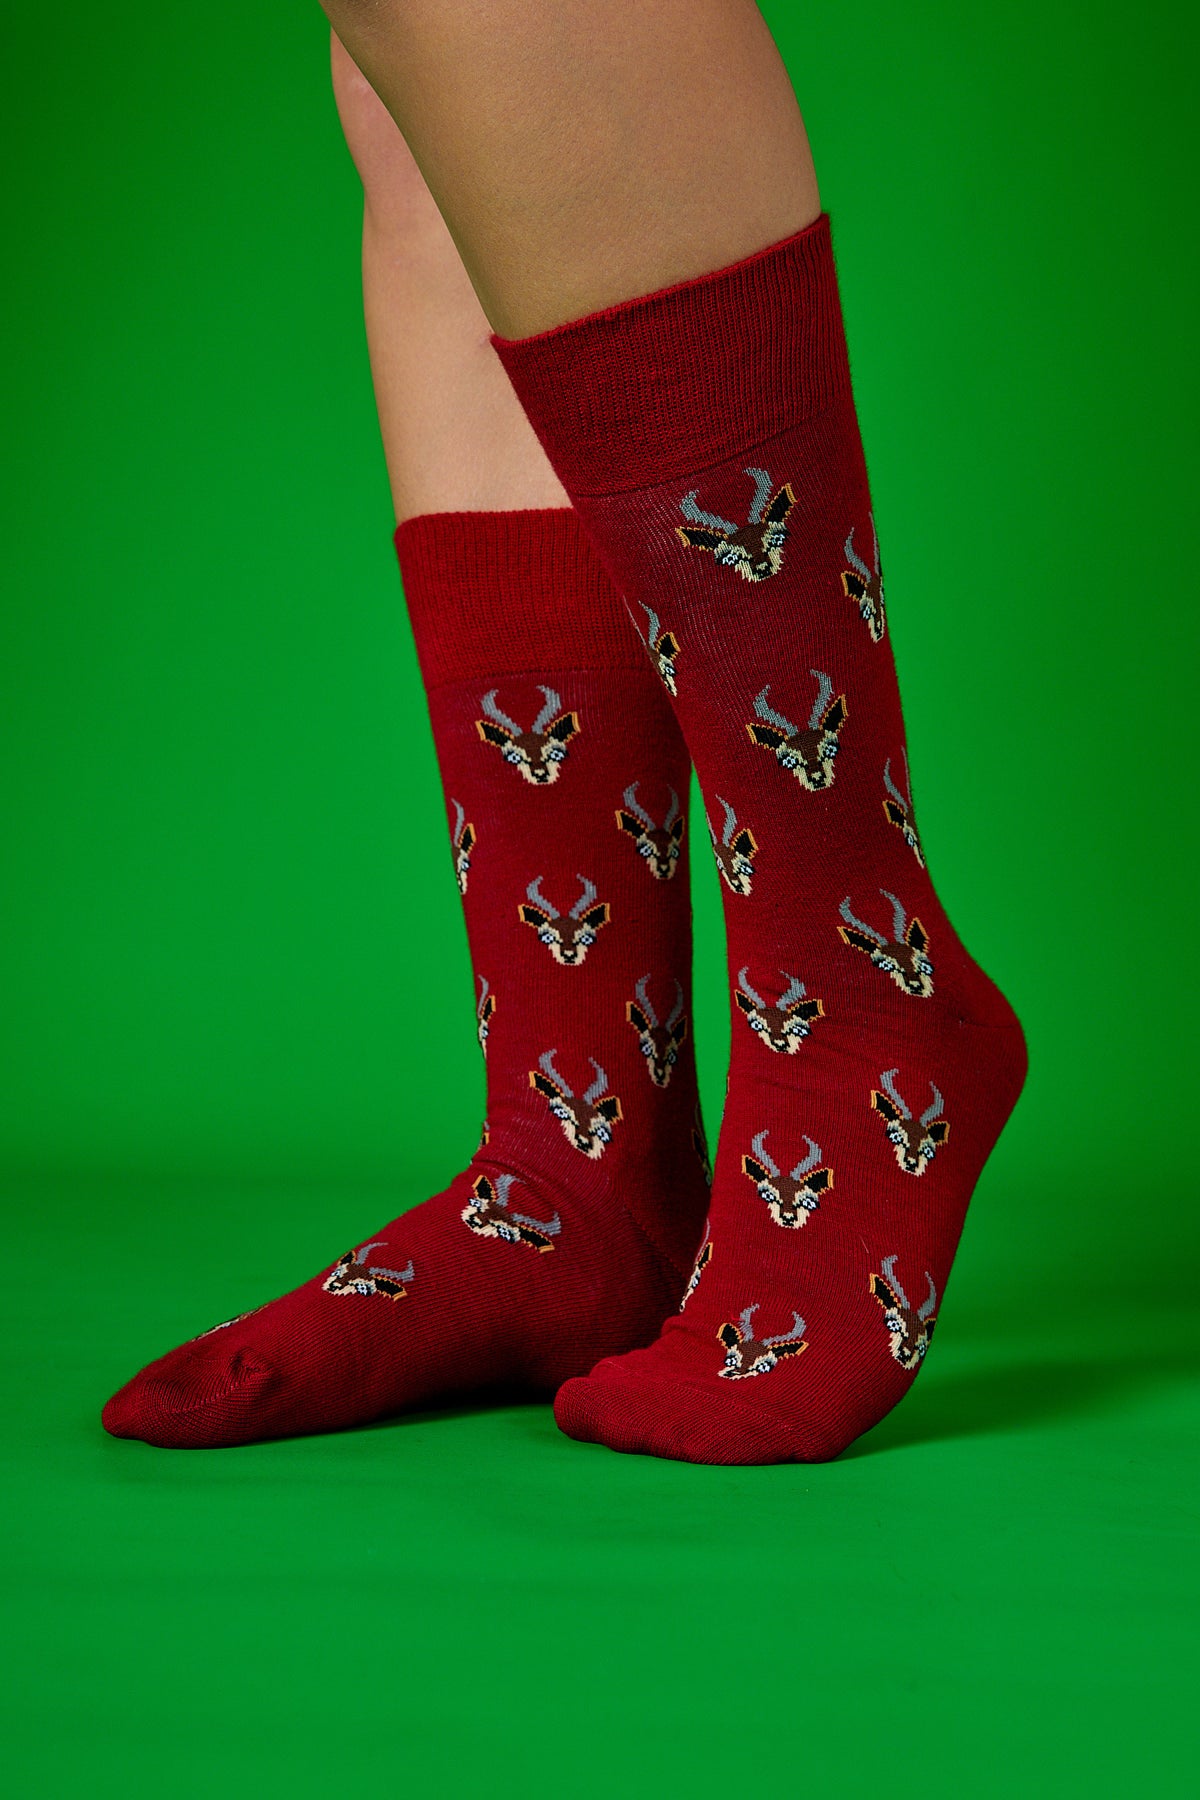 Geyik Portre Kırmızı Fon Desenli Renkli Çorap (41-46)